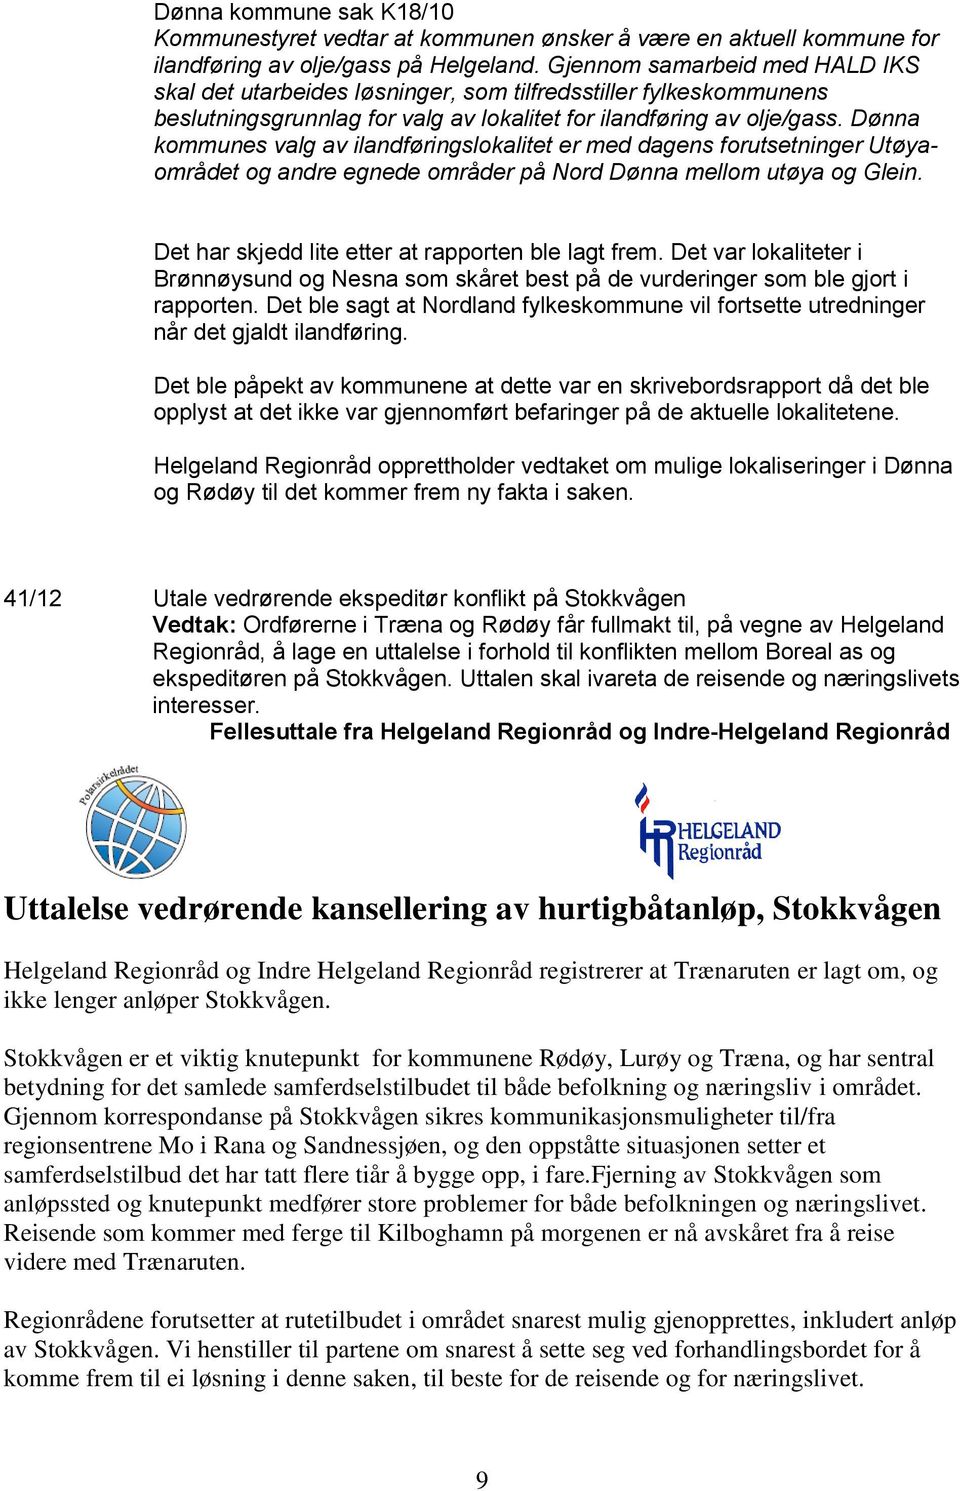 Dønna kommunes valg av ilandføringslokalitet er med dagens forutsetninger Utøyaområdet og andre egnede områder på Nord Dønna mellom utøya og Glein.